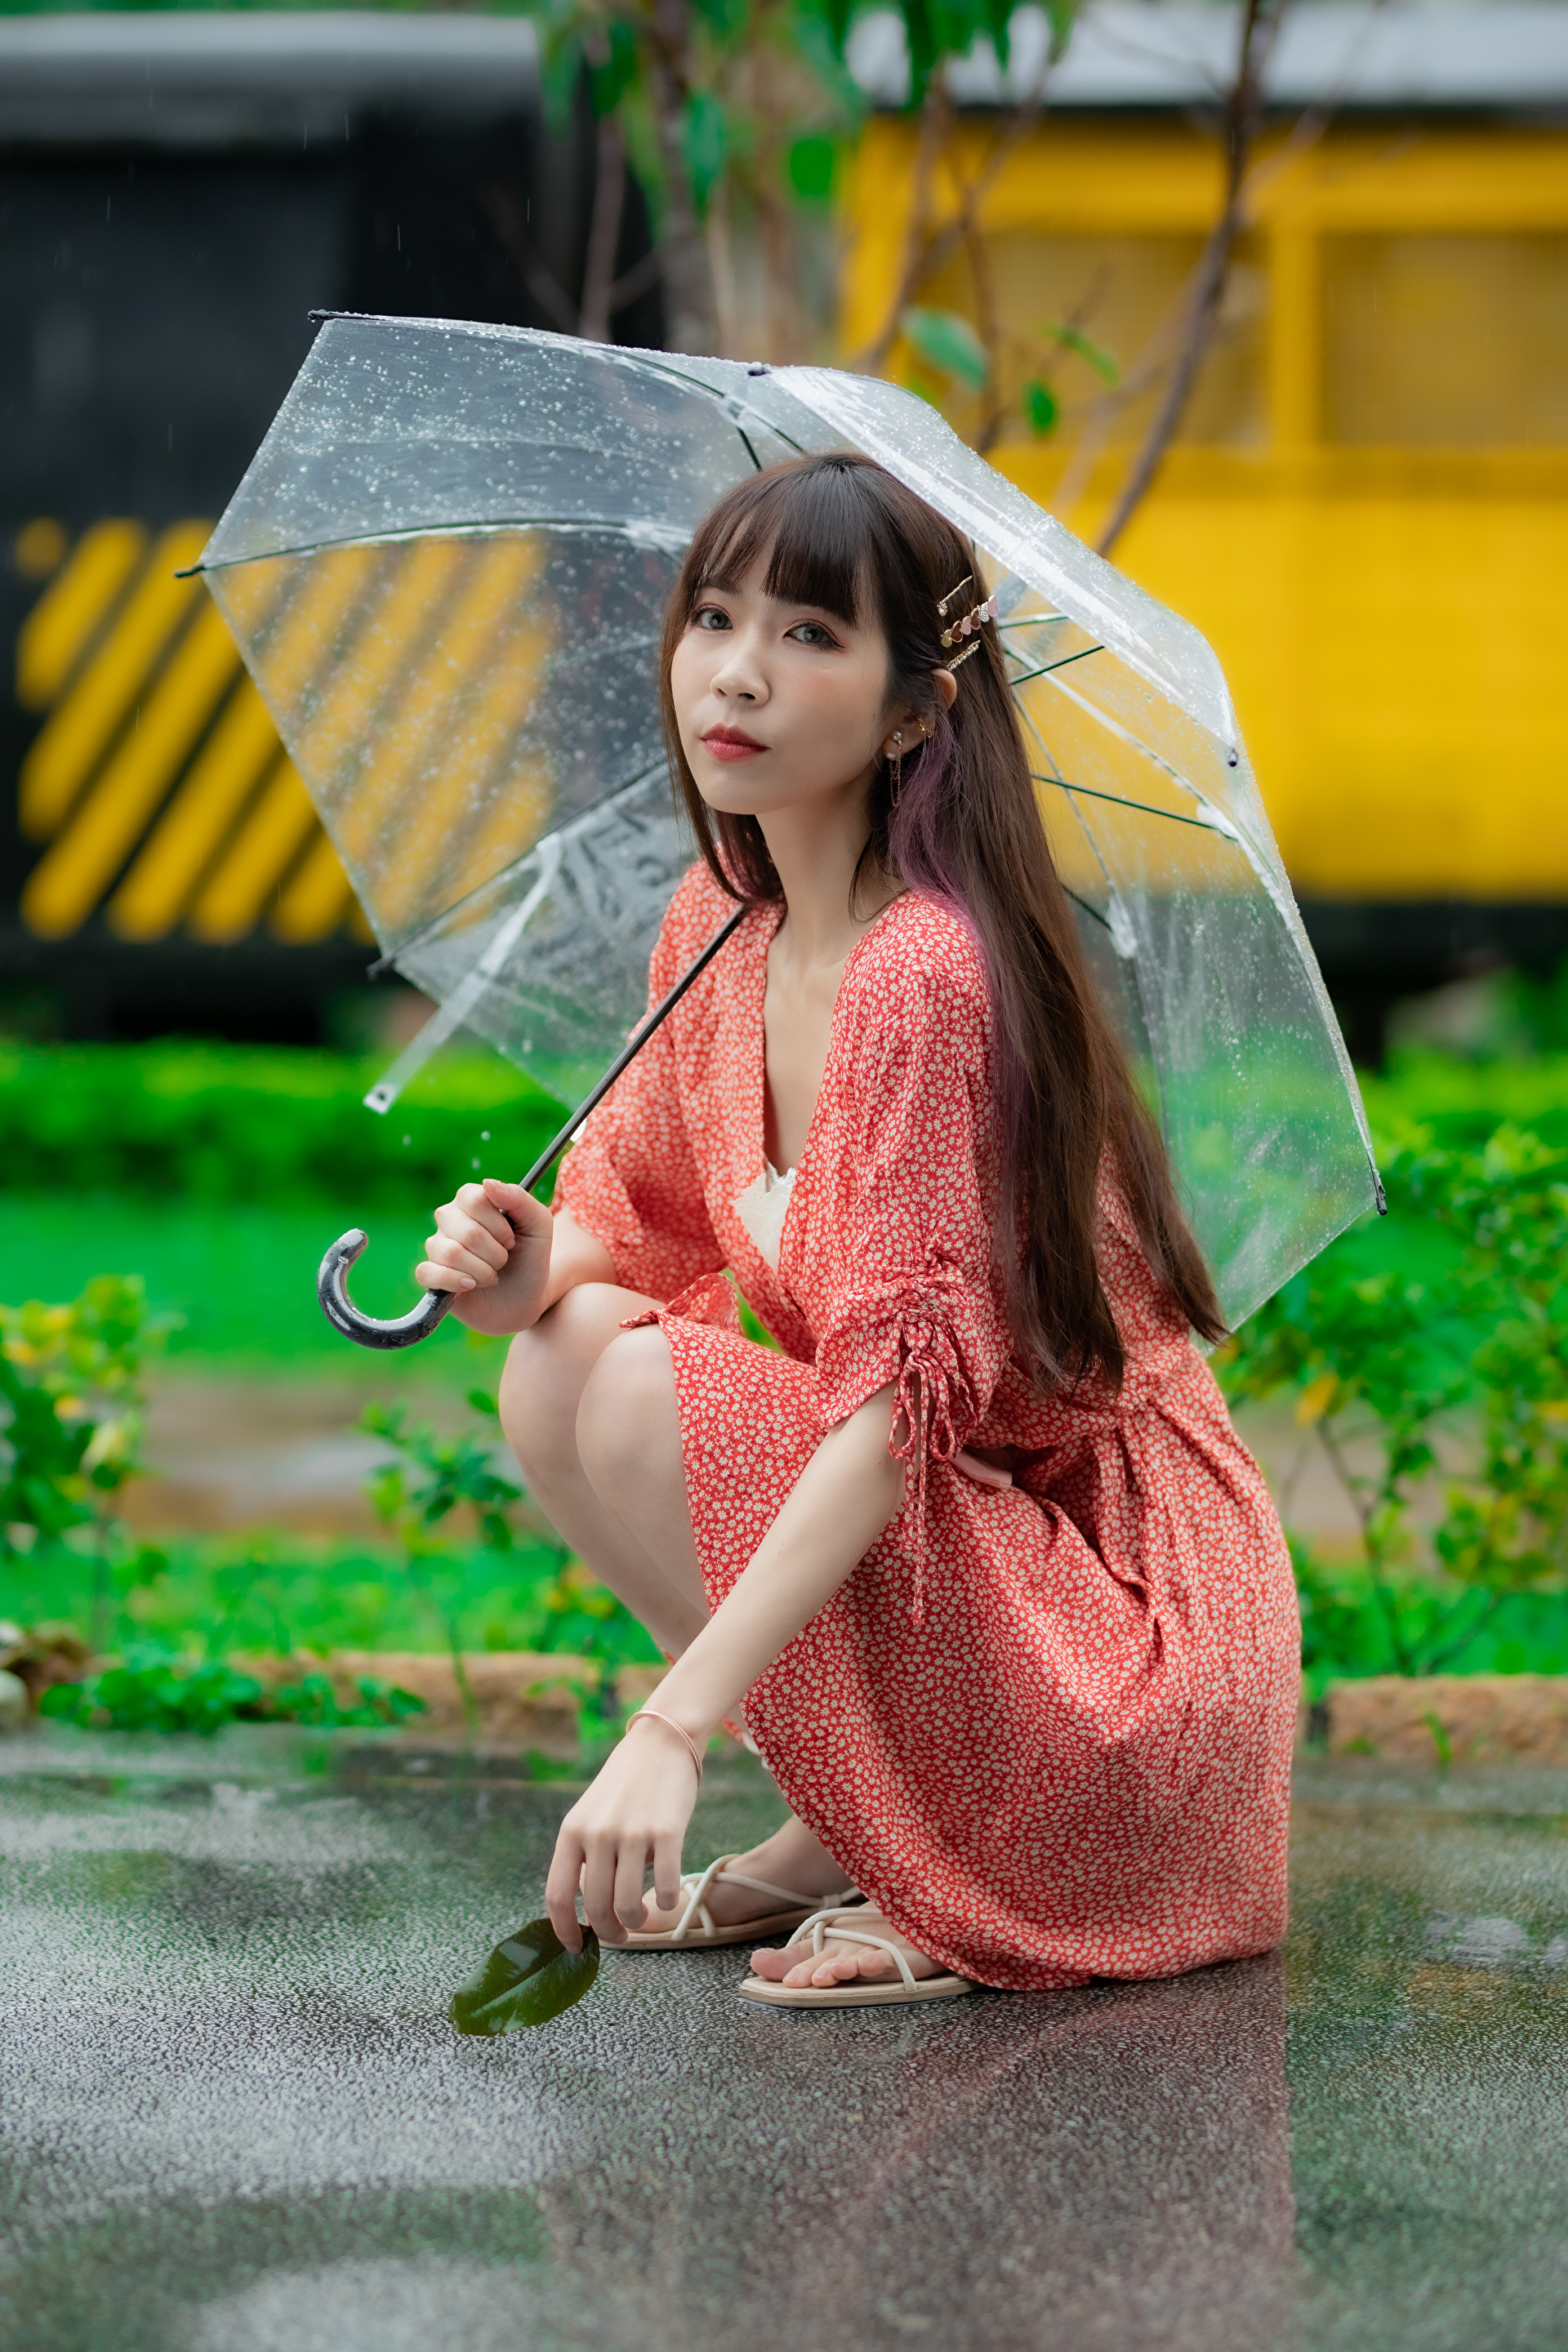 Зонтик сидит. Китаянка с зонтиком. Азиатская девушка с зонтиком. Платье зонтик. Позируем с зонтиком.